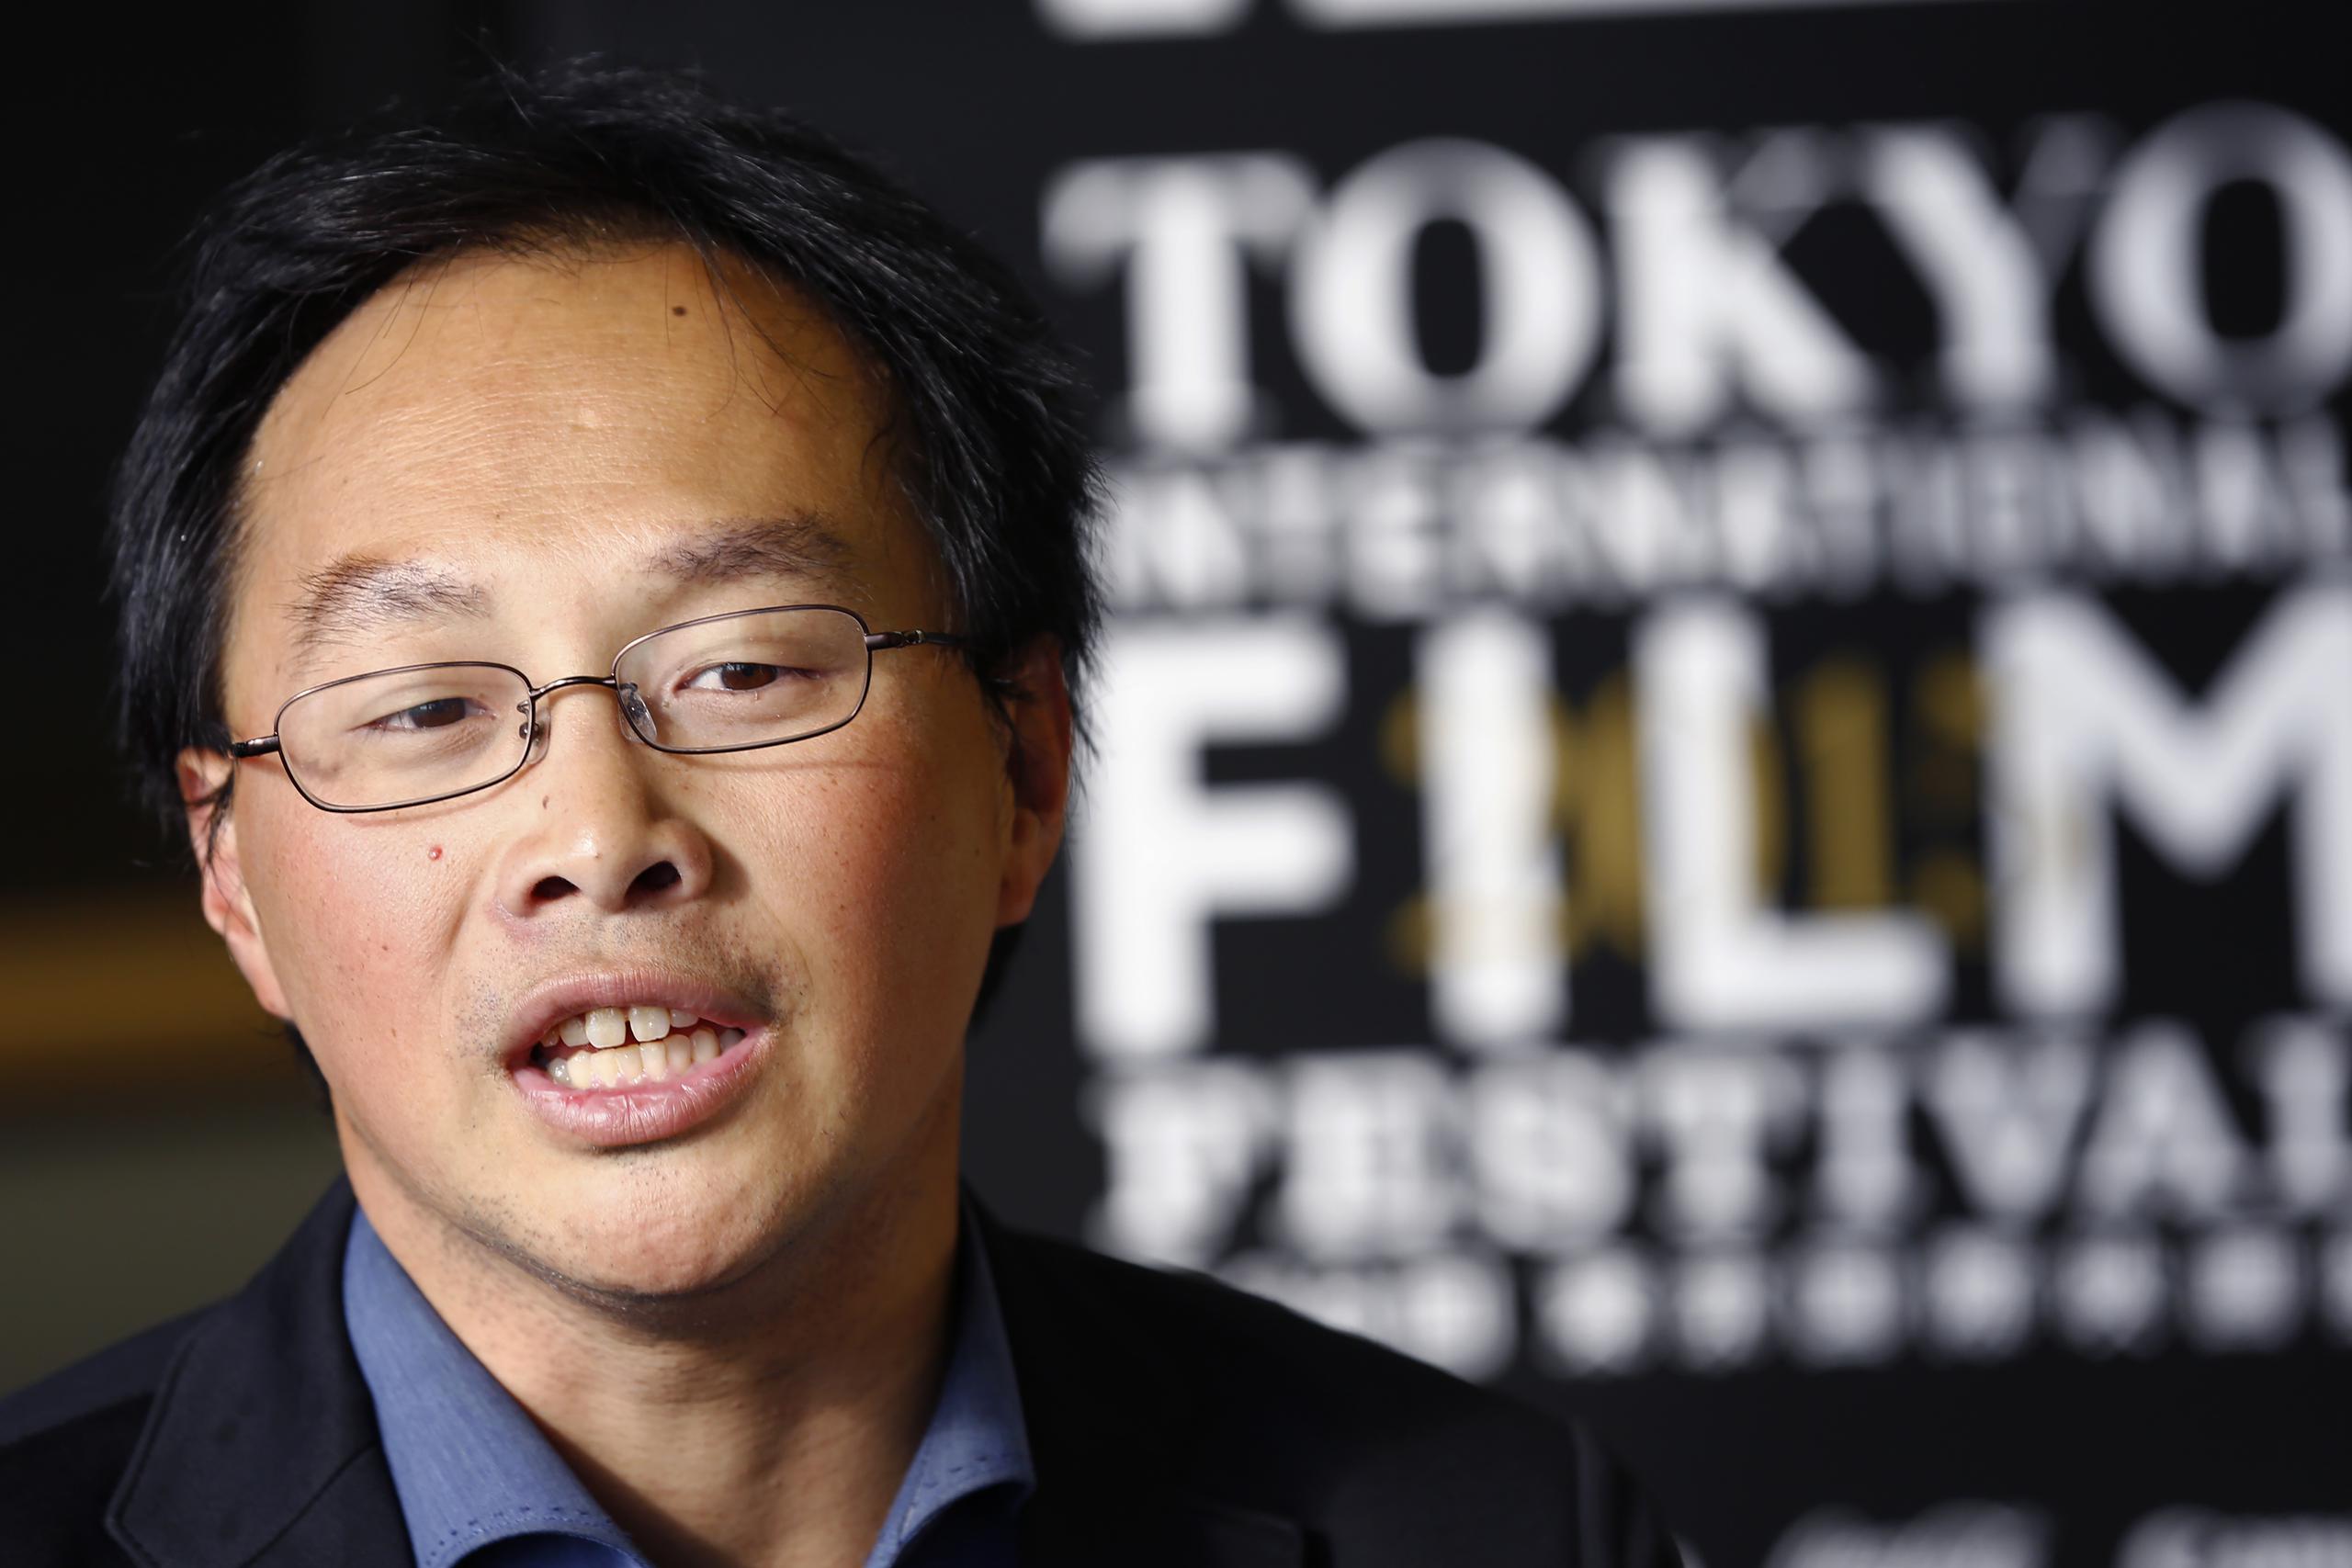 El director japonés Koji Fukada y otros cineastas de renombre de Japón firmaron una petición expresando su indignación por casos de abuso sexual en la industria tras denuncias en la prensa contra varios realizadores.